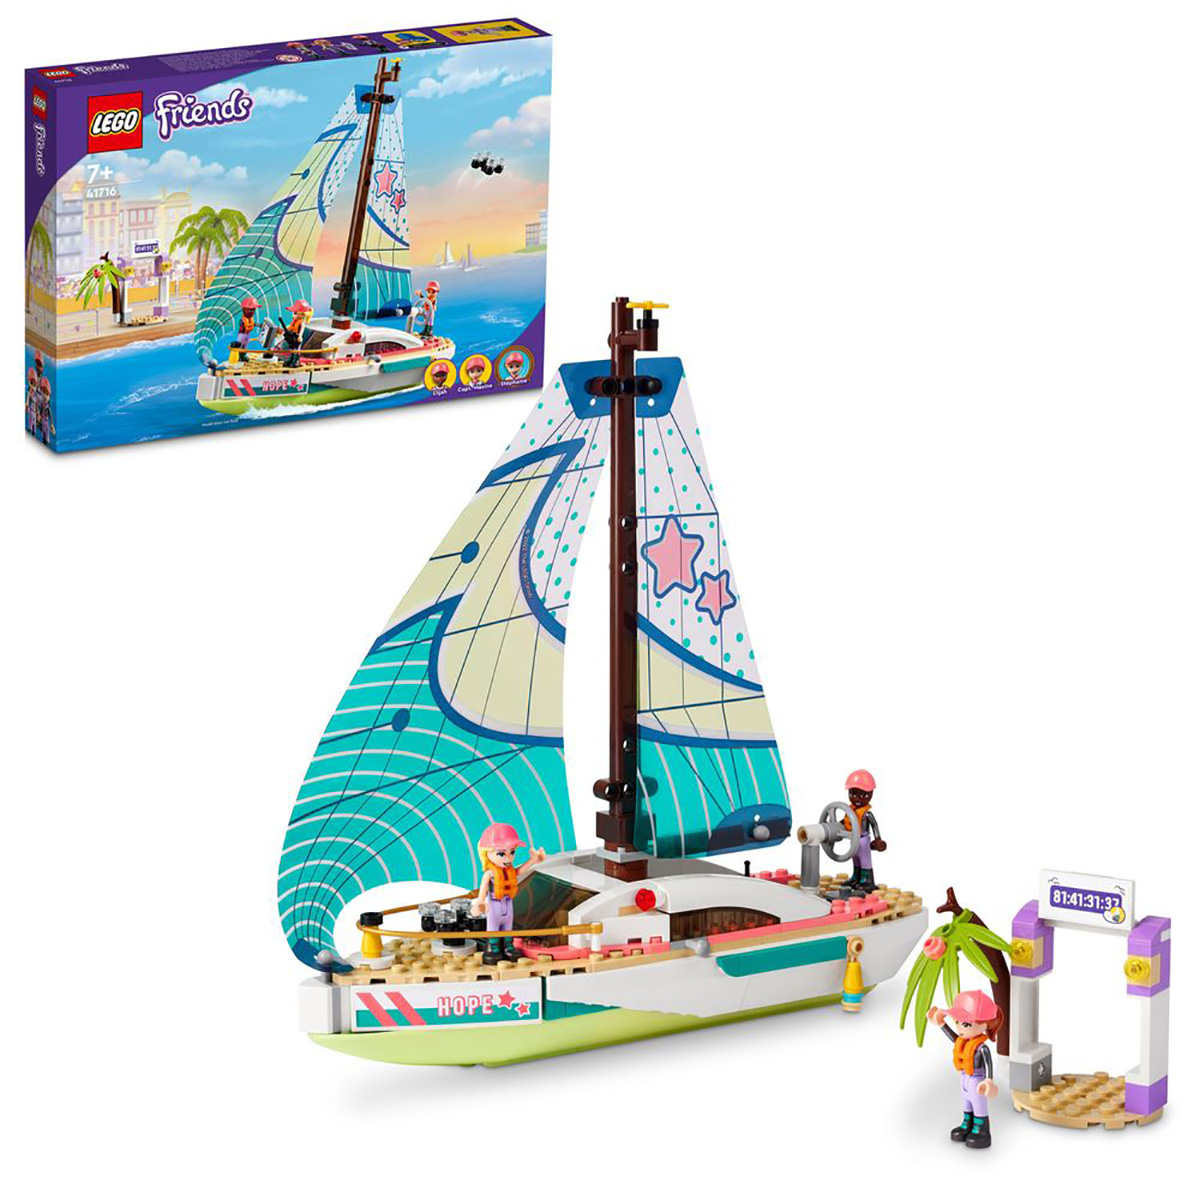 Конструктор LEGO Friends Приключения Стефани на яхте, 304 детали, 41716 исчезновение стефани мейлер